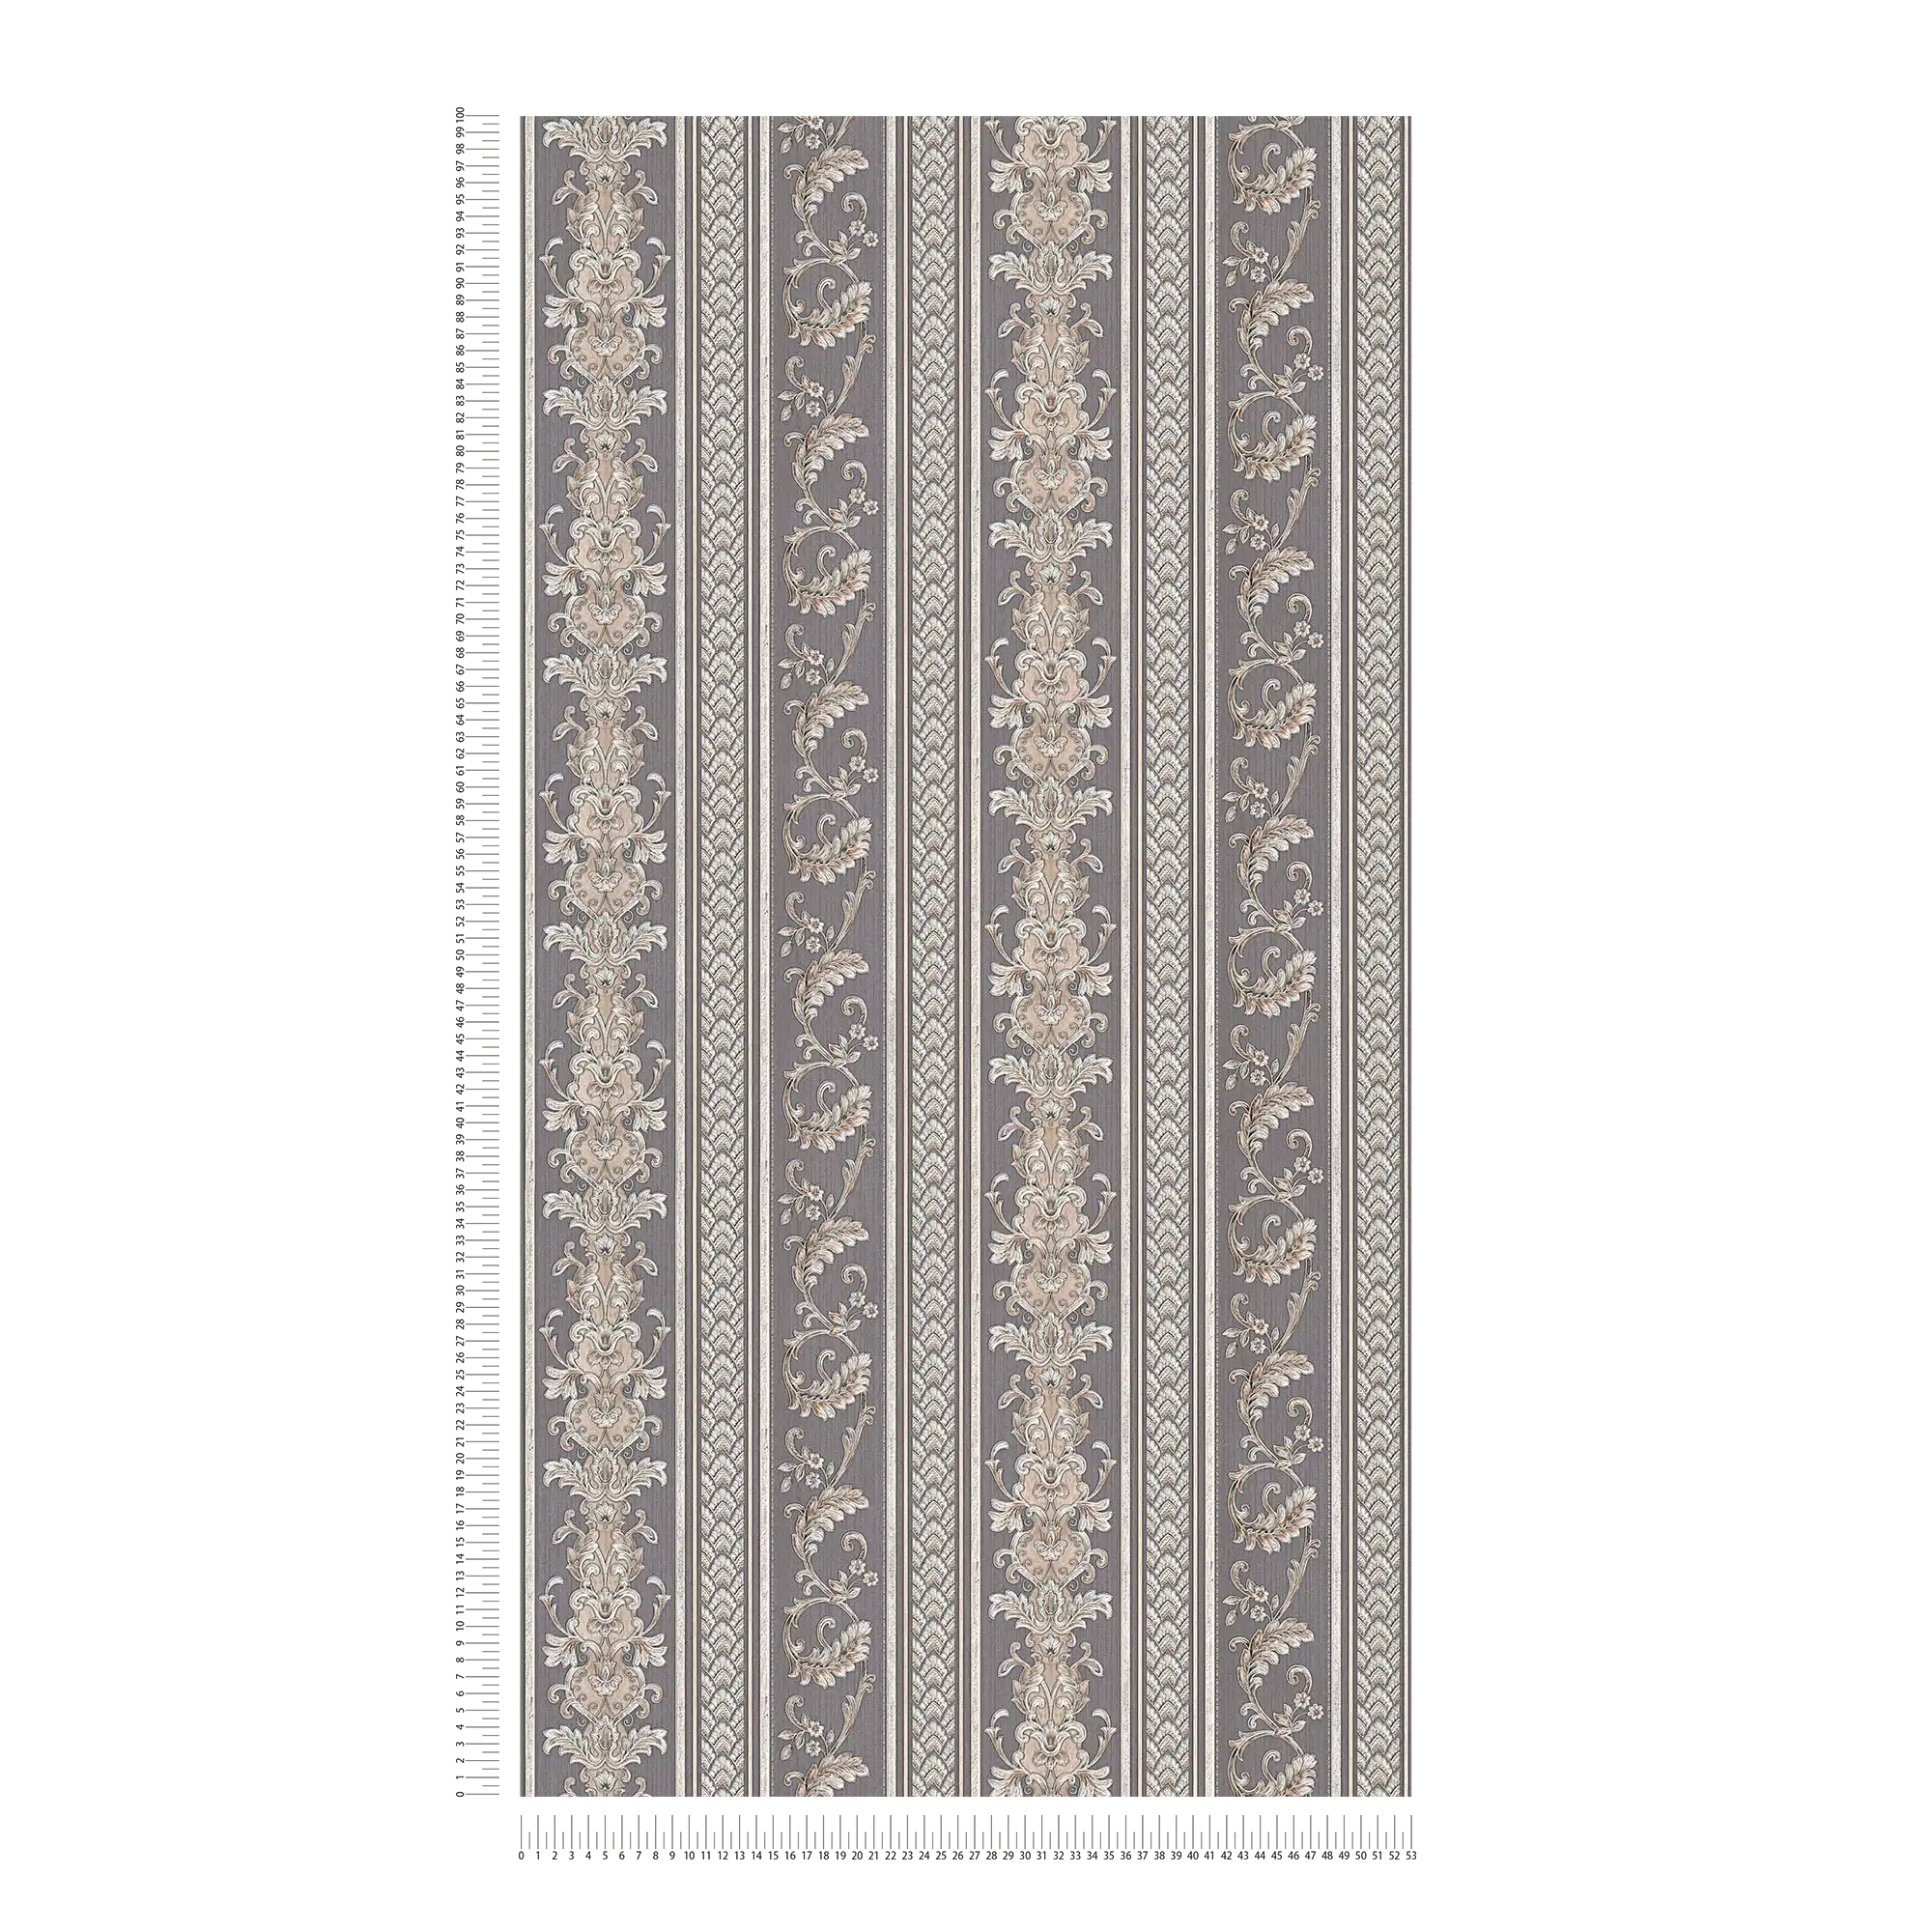             Ornament Tapete Metallic Design mit Streifen – Silber
        